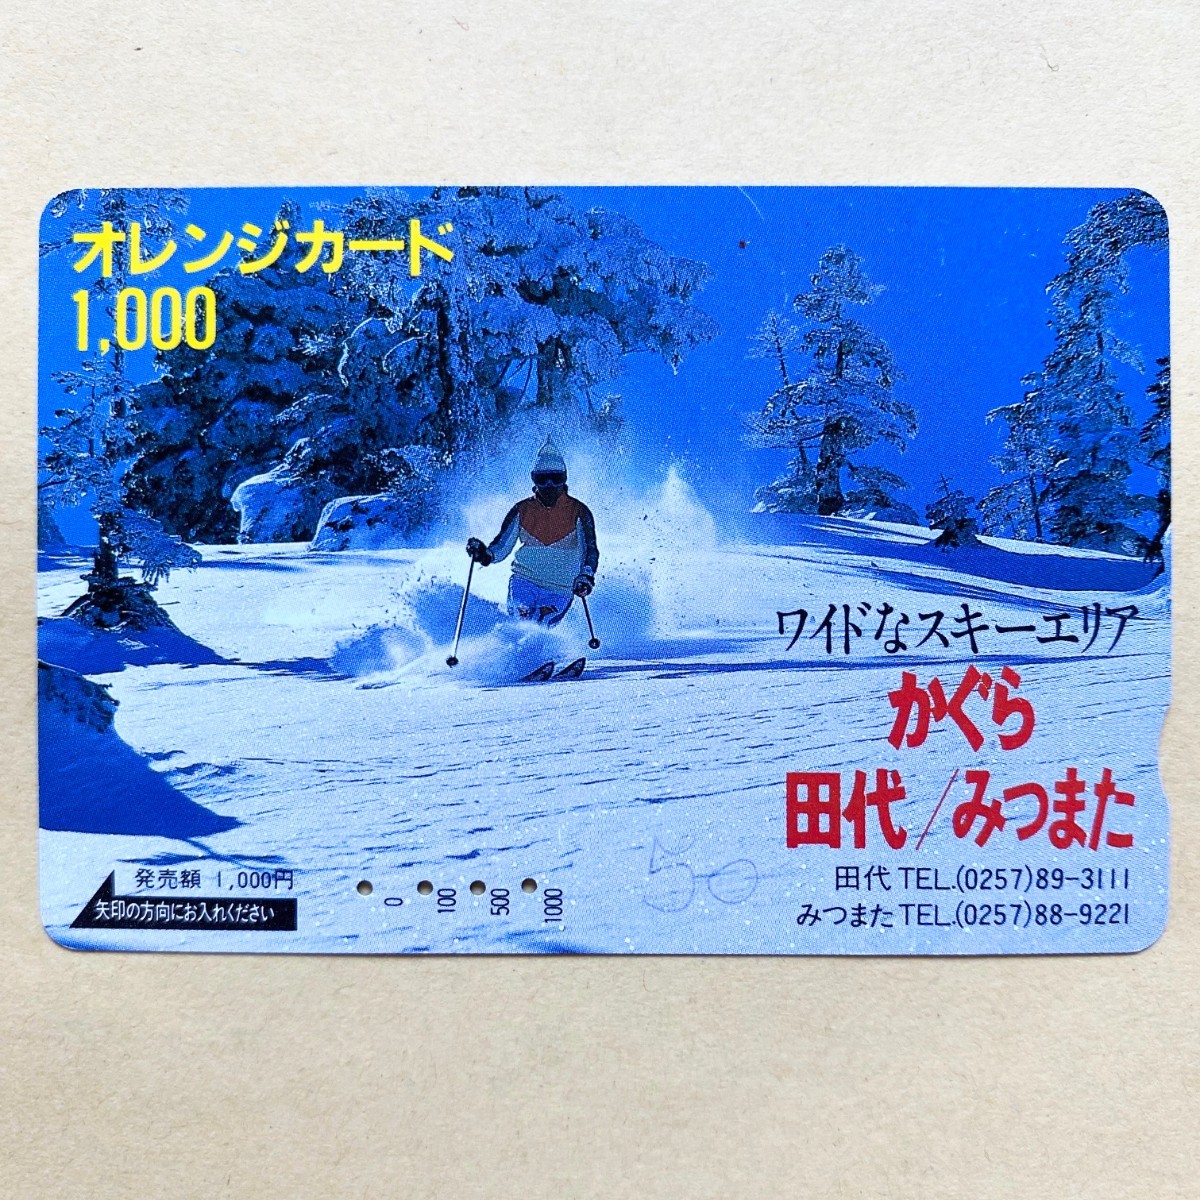 【使用済】 オレンジカード JR東日本 ワイドなスキーエリア かぐら 田代/みつまた_画像1